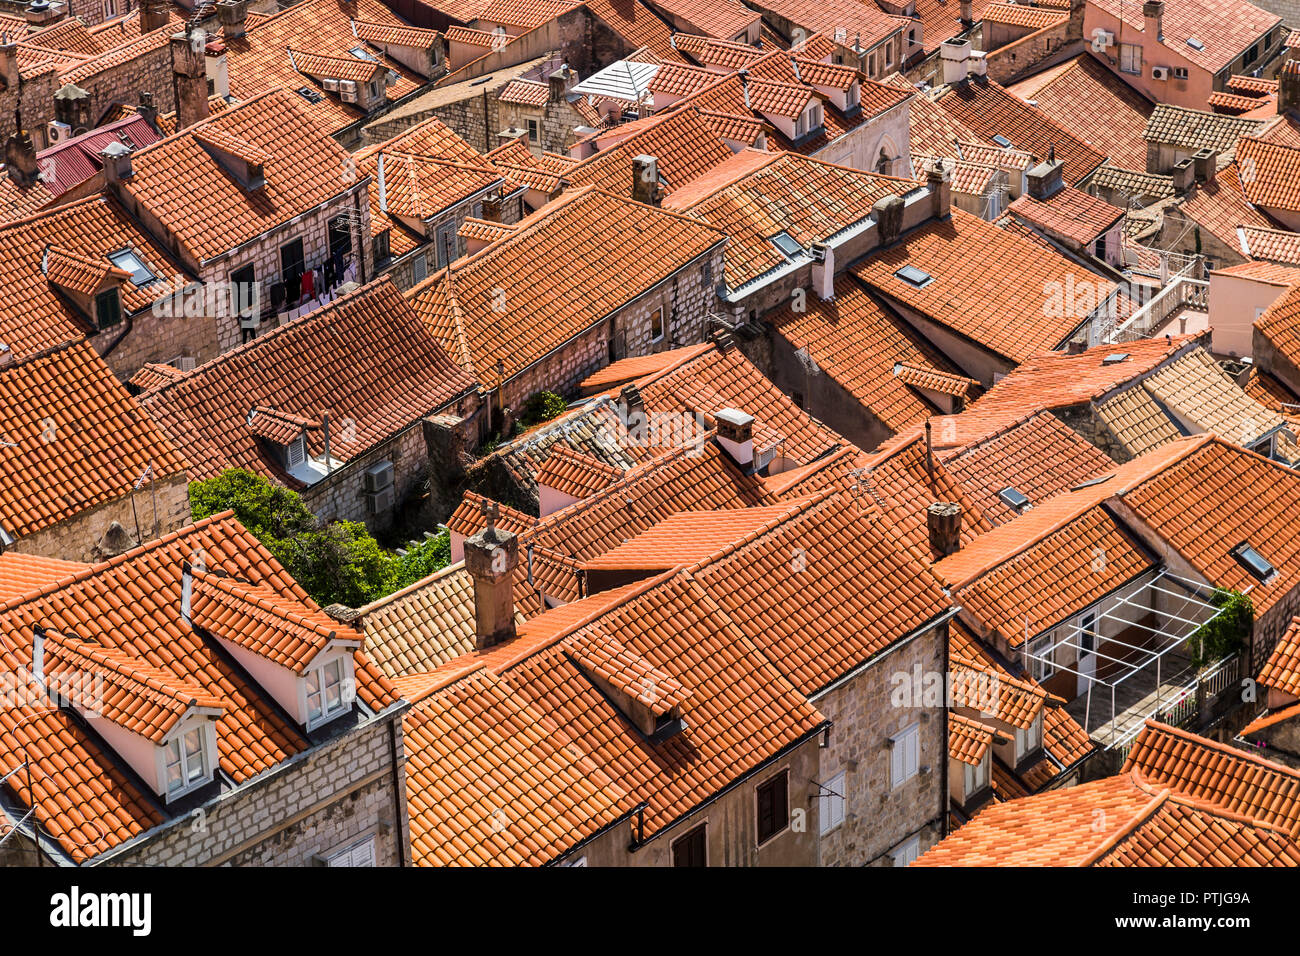 Façades en pierre et toits de tuiles orange qui composent un paysage typique de Dubrovnik. Banque D'Images